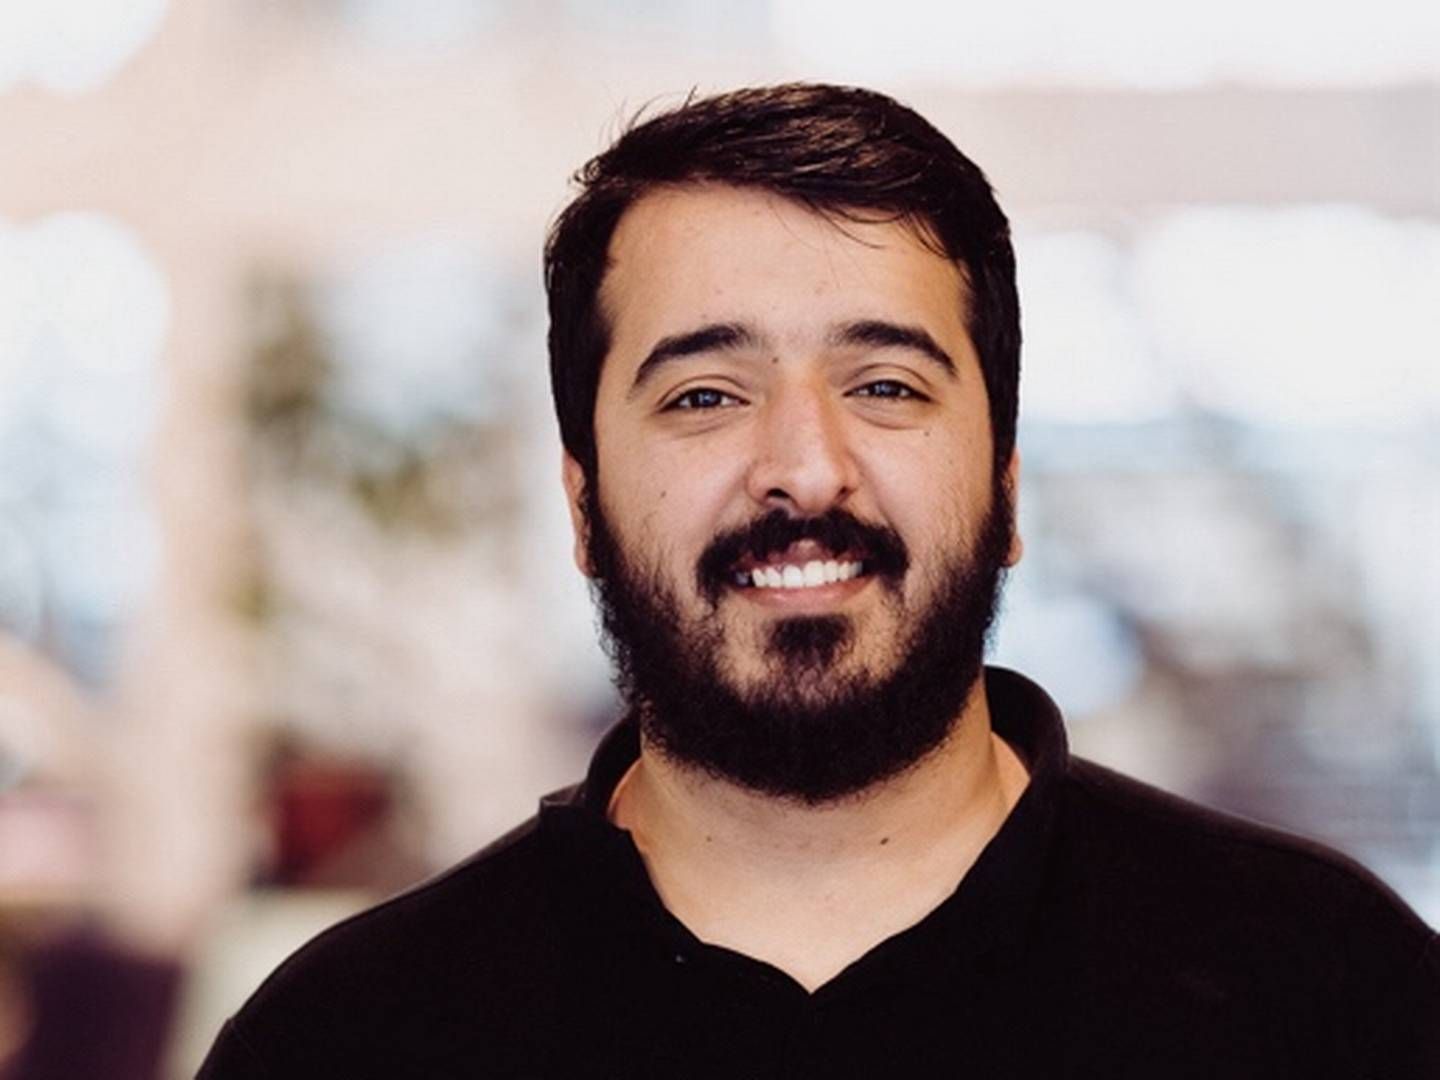 Ahmad Sabah er uddannet softwareudvikler og var, inden han gik i luften med Groundley, ansat hos Visma-virksomheden Ditmer. | Foto: Pressefoto